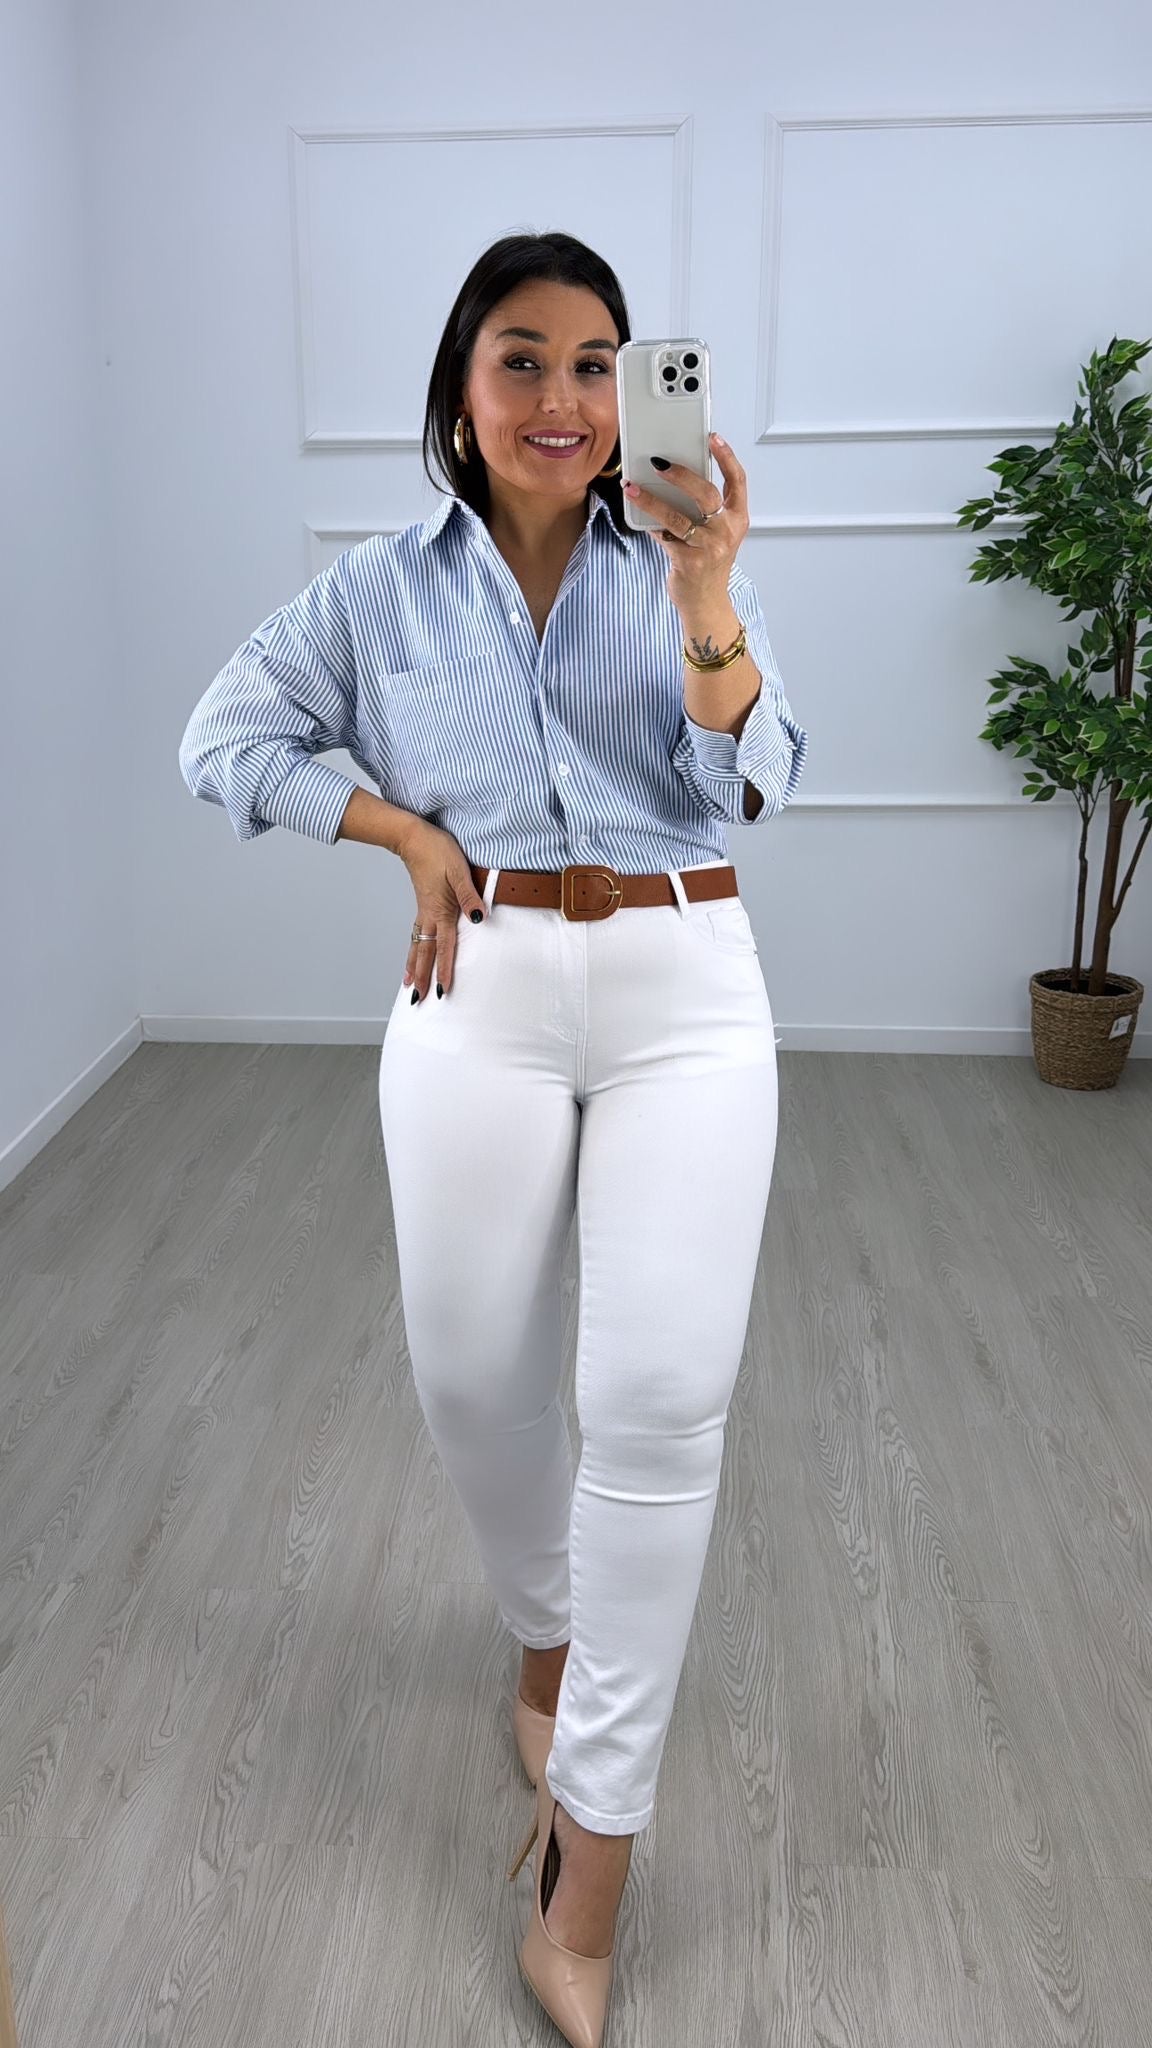 Pantalon vaquero blanco recto - Sueños Moda y Complementos